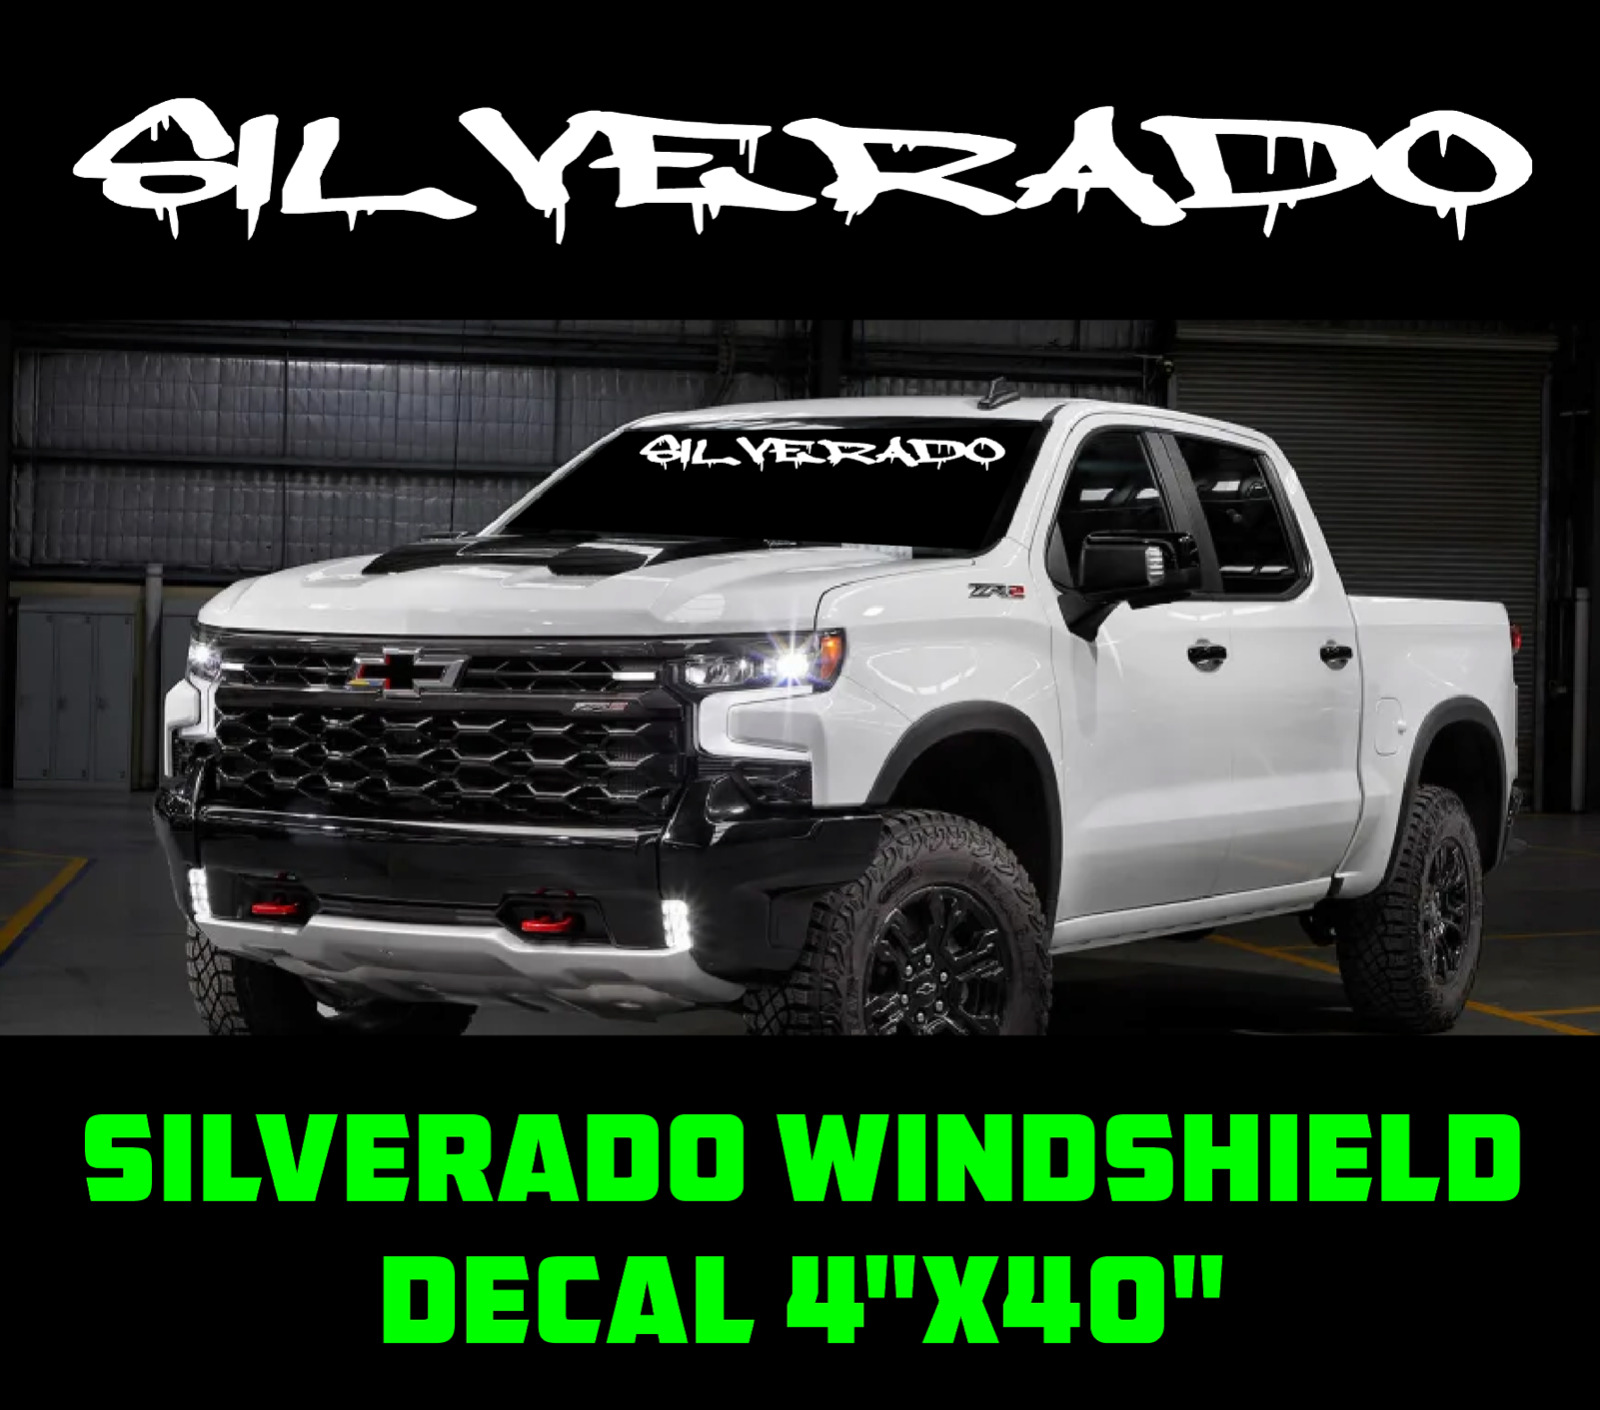 New Chevrolet SILVERADO Windshield Graphic Vinyl Decal Sticker Vehicle Logo Drip